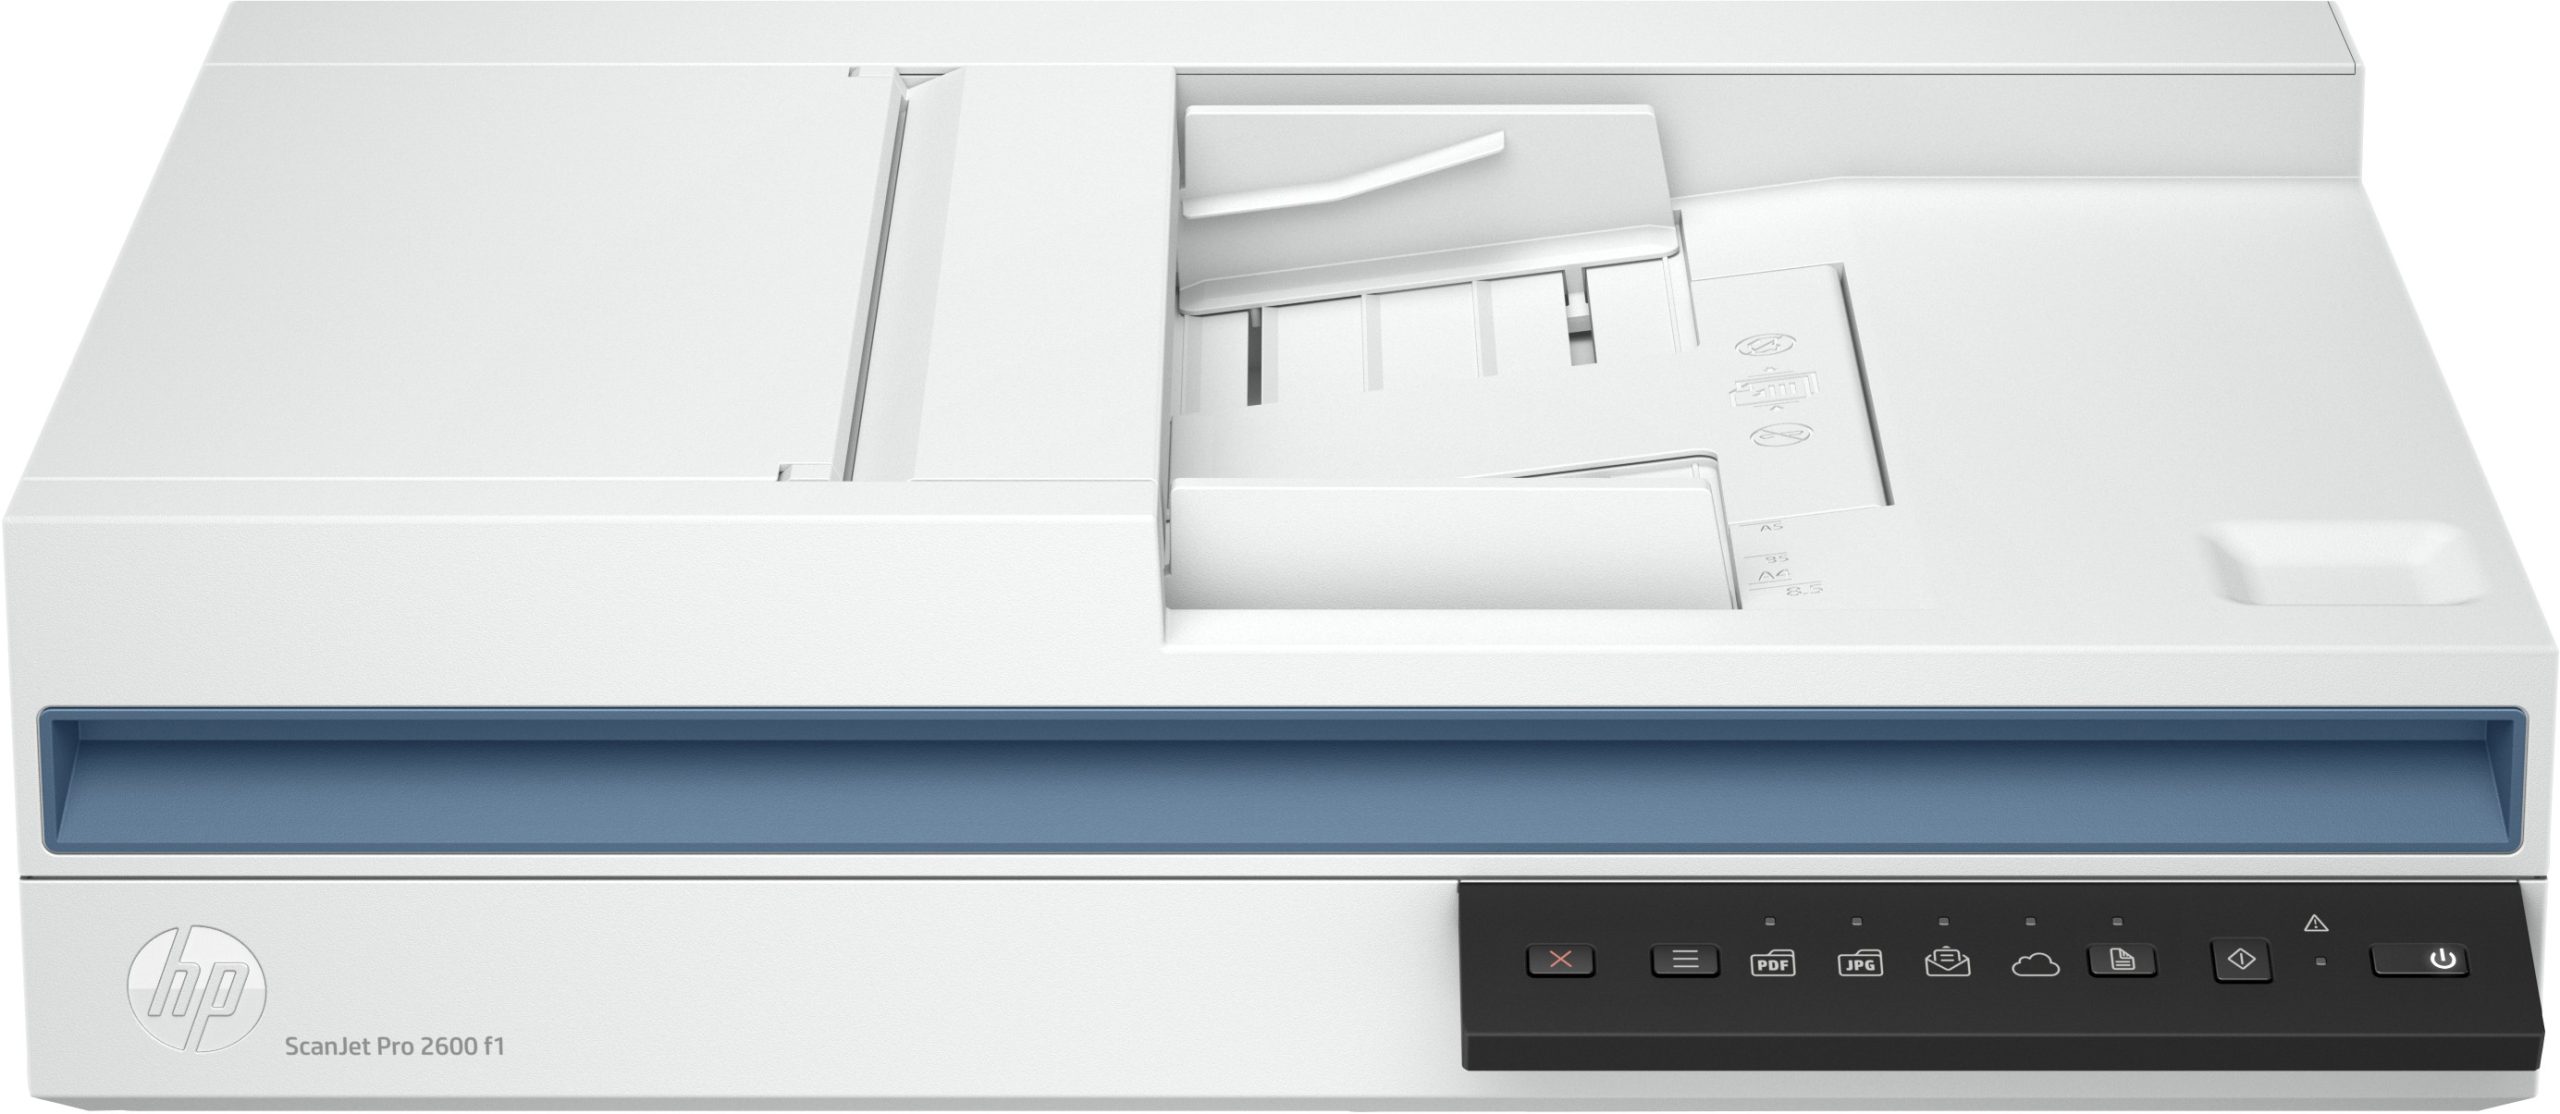 Escáner HP ScanJet Pro 2600 f1 20G05A - 216 x 3100 mm - Base plana y ADF